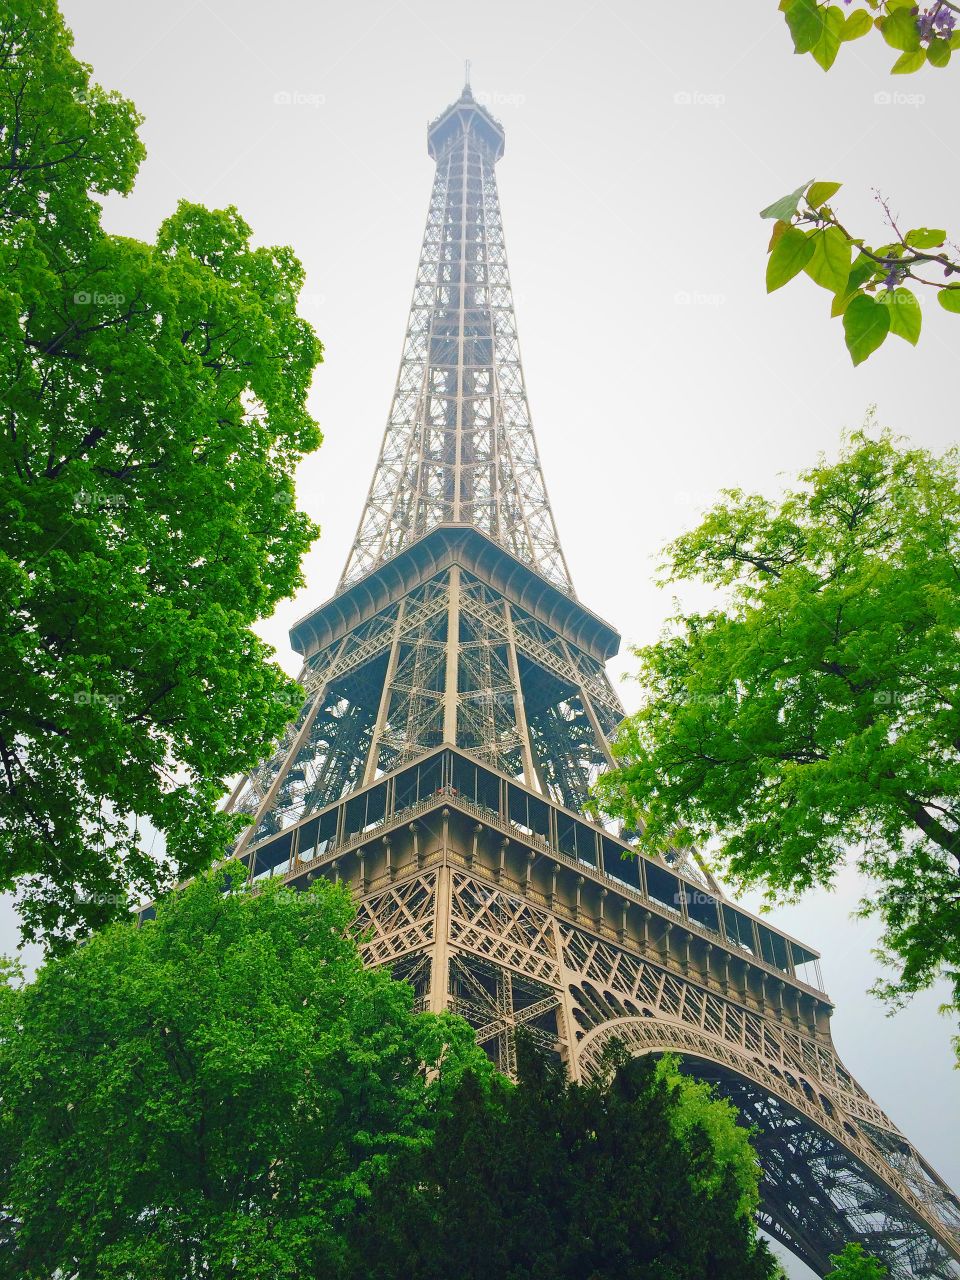 La Tour Eiffel. 4th visit to Paris so I decided to take photos this time round.